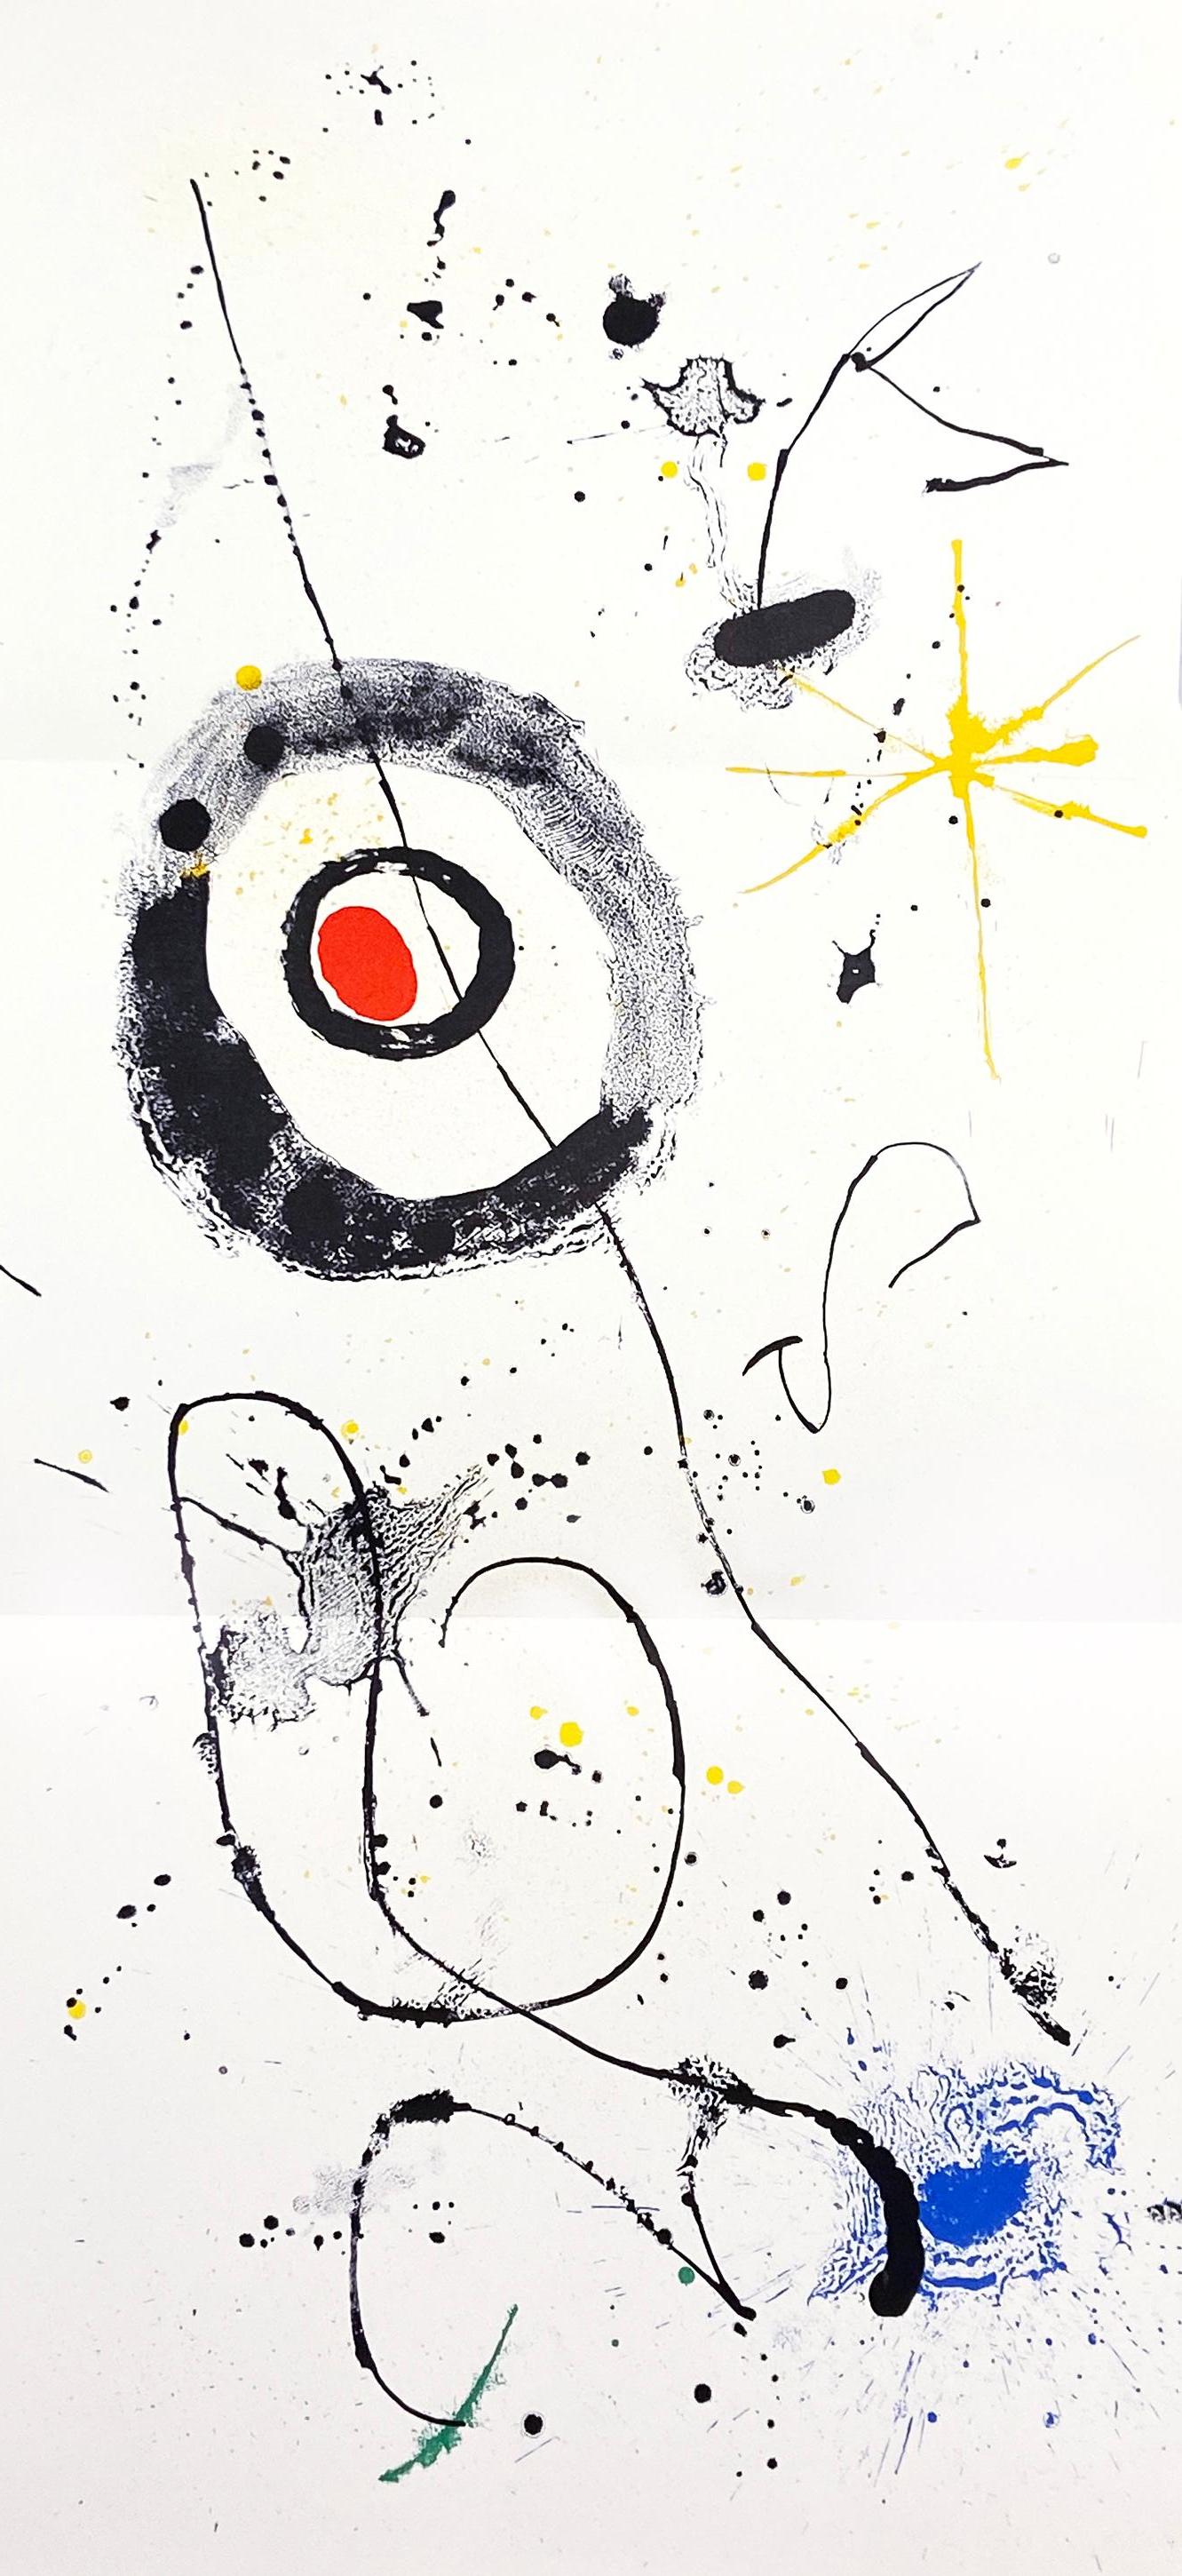 1960s Joan Miró lithograph Derriere le Miroir (Miró 1960s)  1